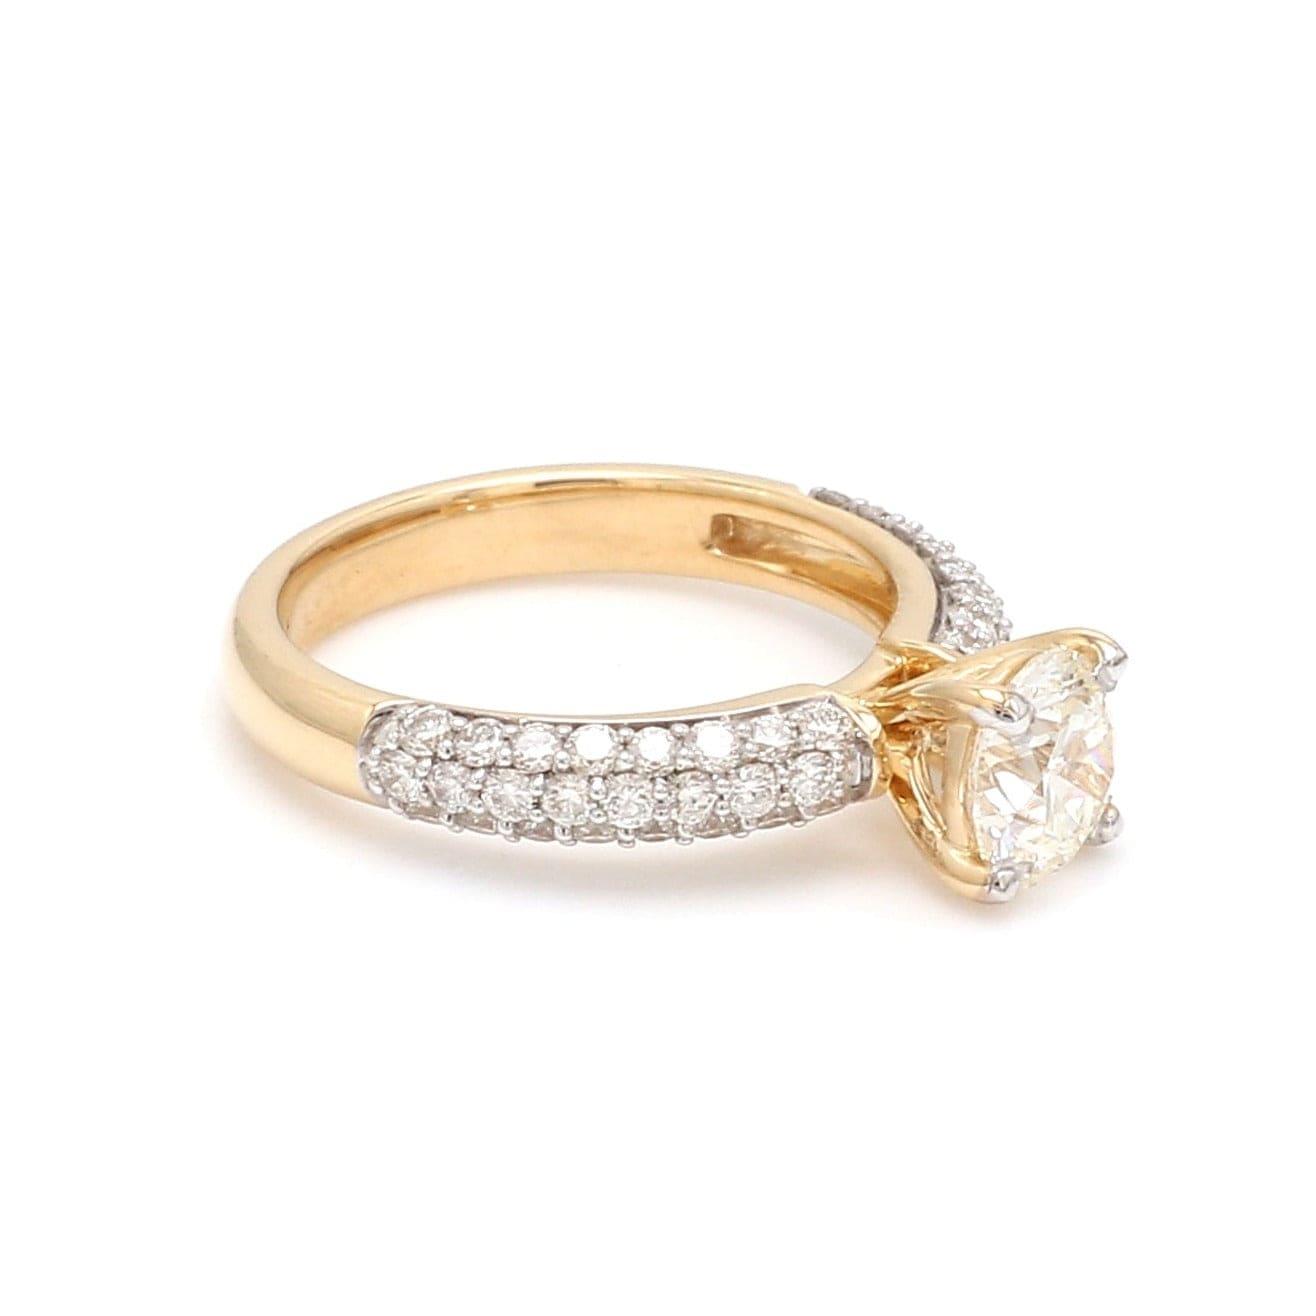 Buy Diamond Rings Online At Best Prices | CaratLane